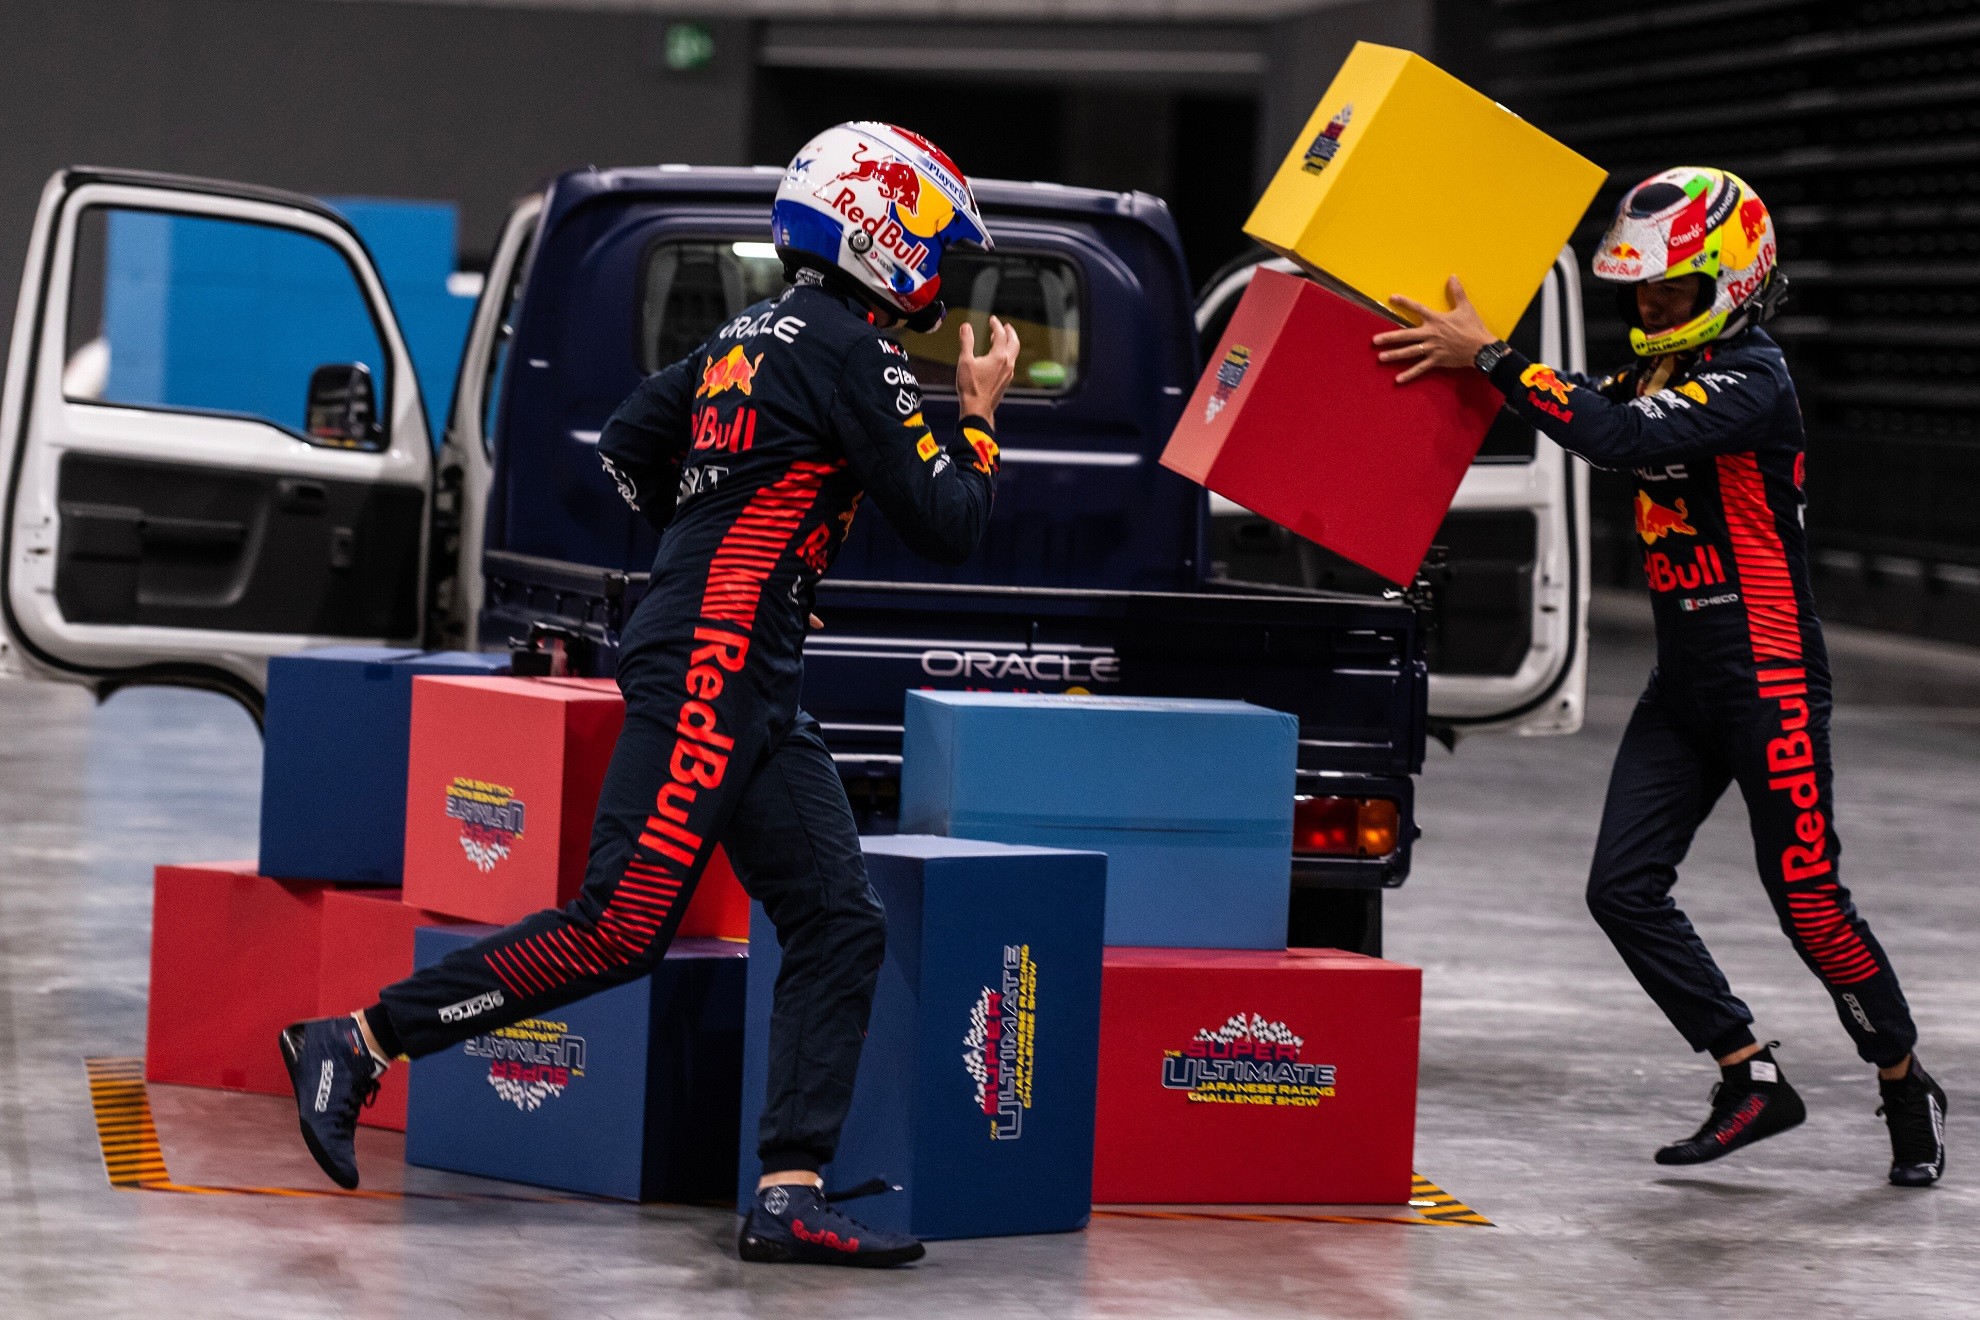 Vídeo: Verstappen se diverte em desafio com caminhãozinho e  Perez "sofre" para fazer baliza